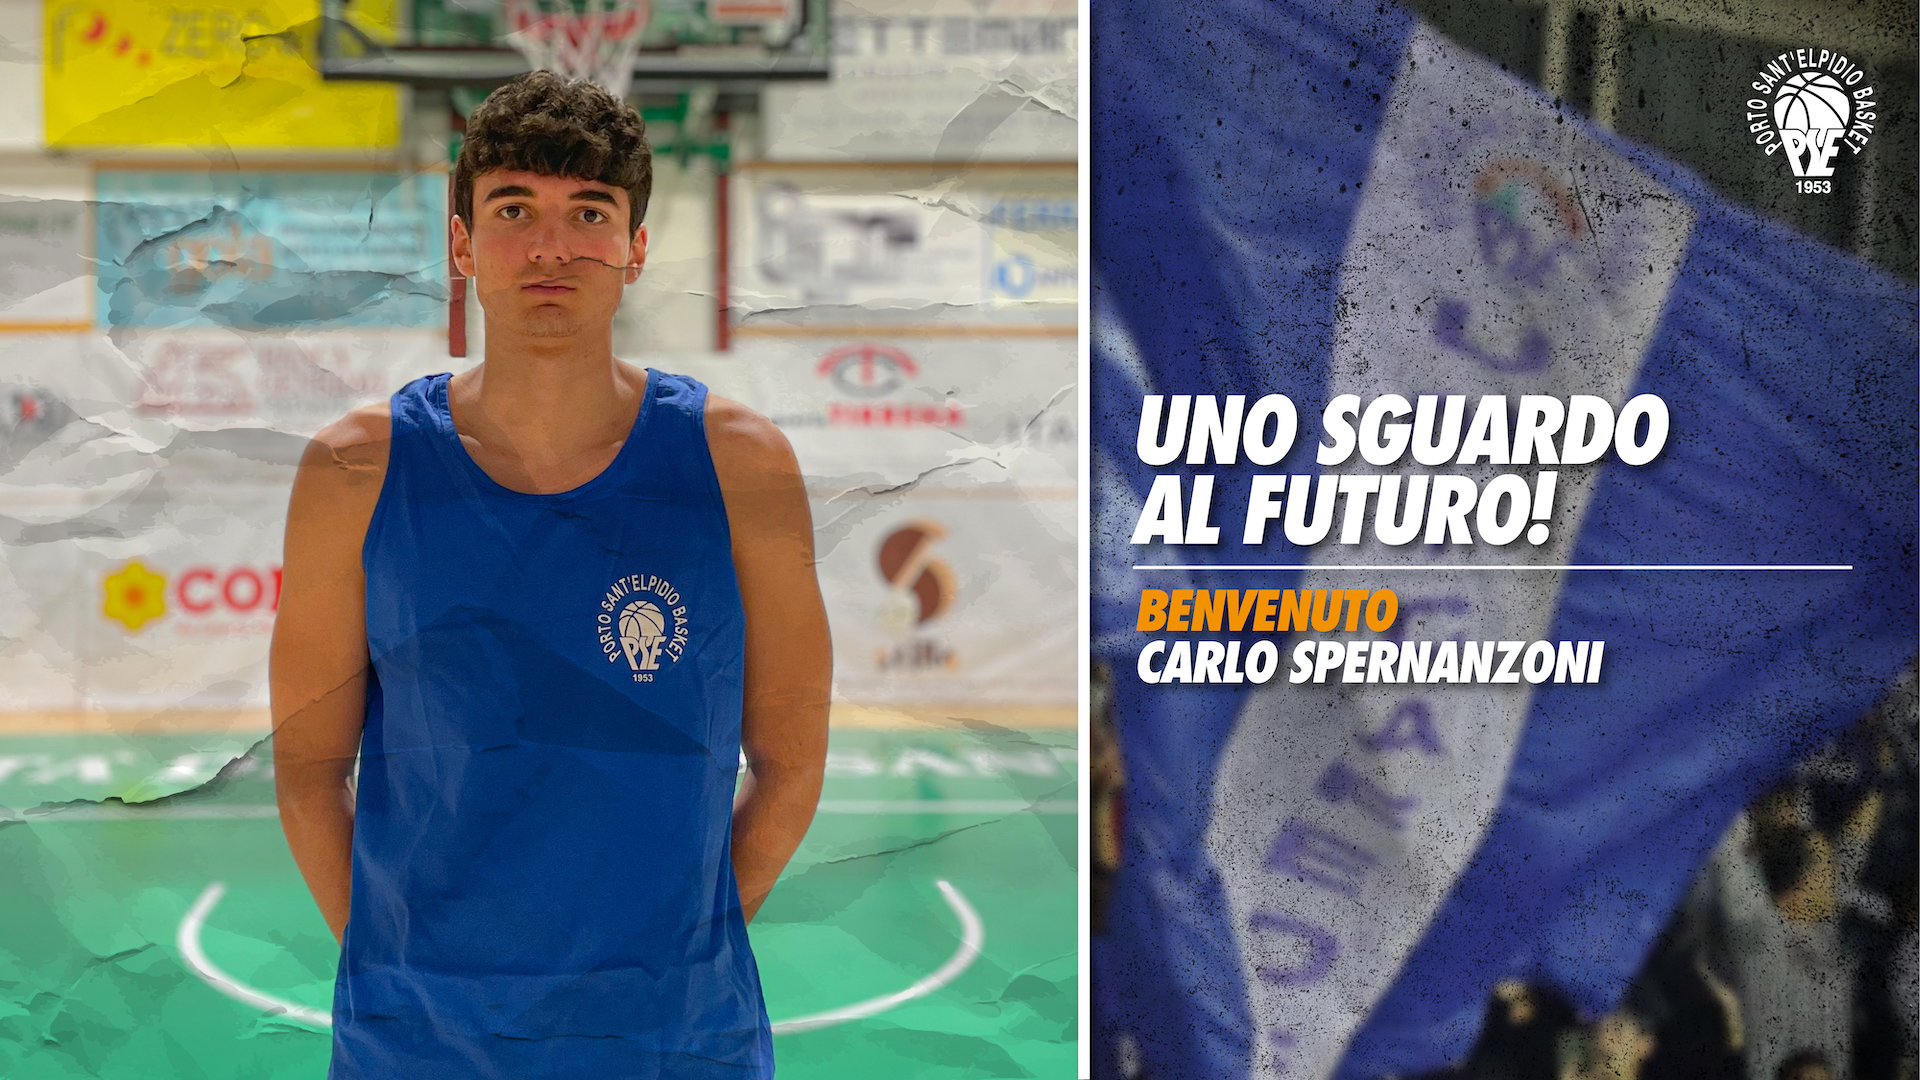 Uno sguardo al futuro: Benvenuto Carlo Spernanzoni!